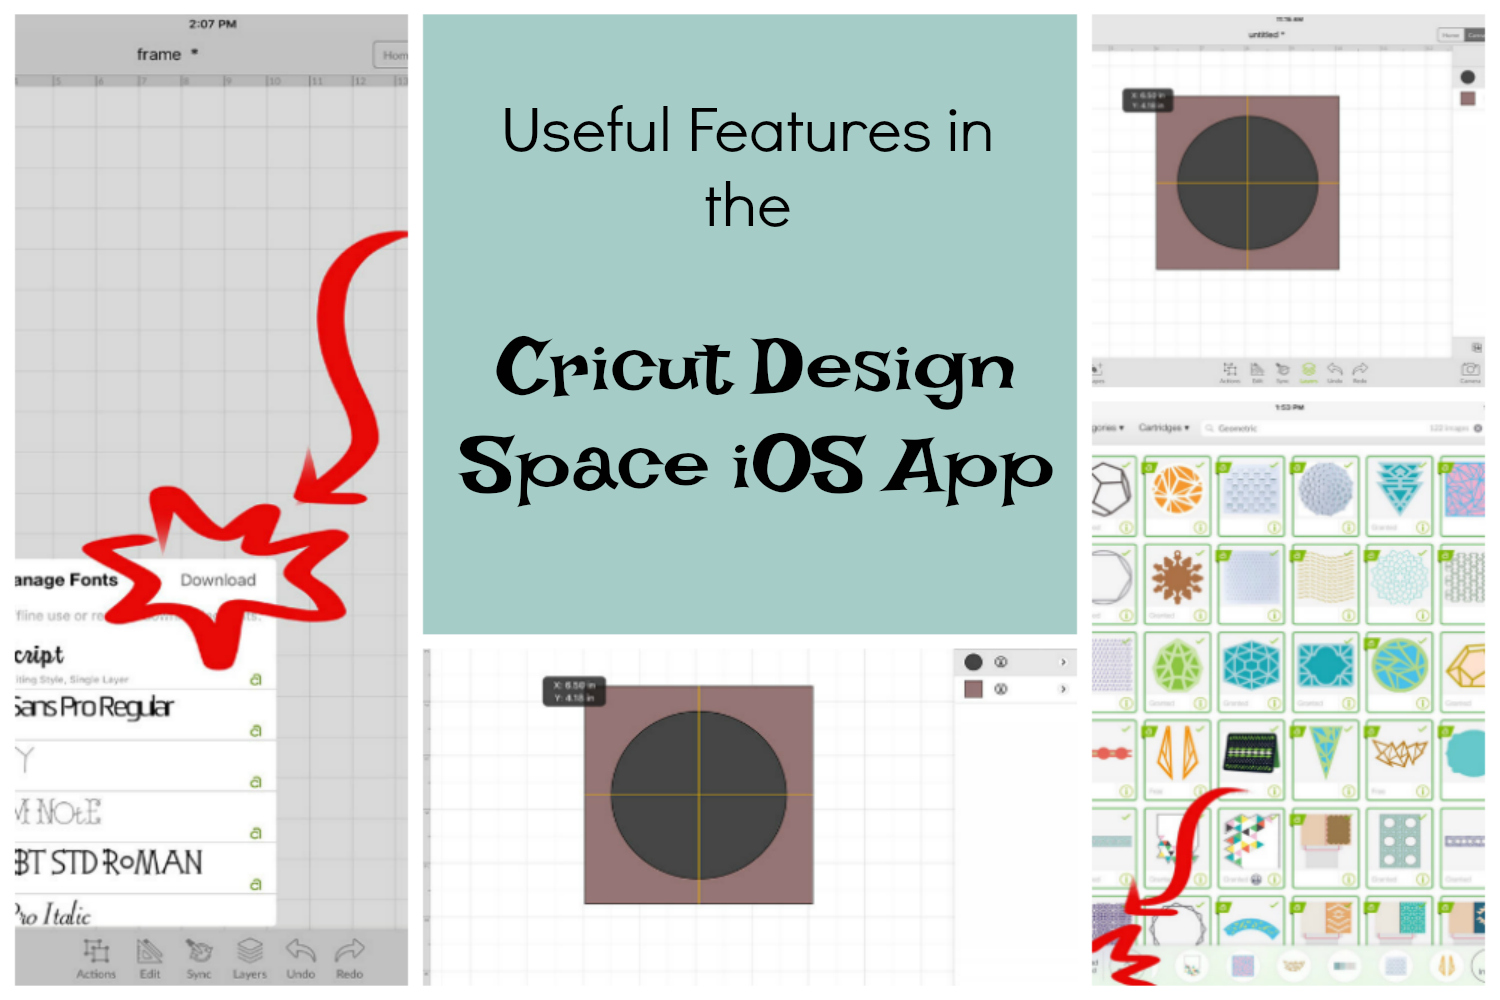 Useful Features of the Design Space iOS App - Cricut